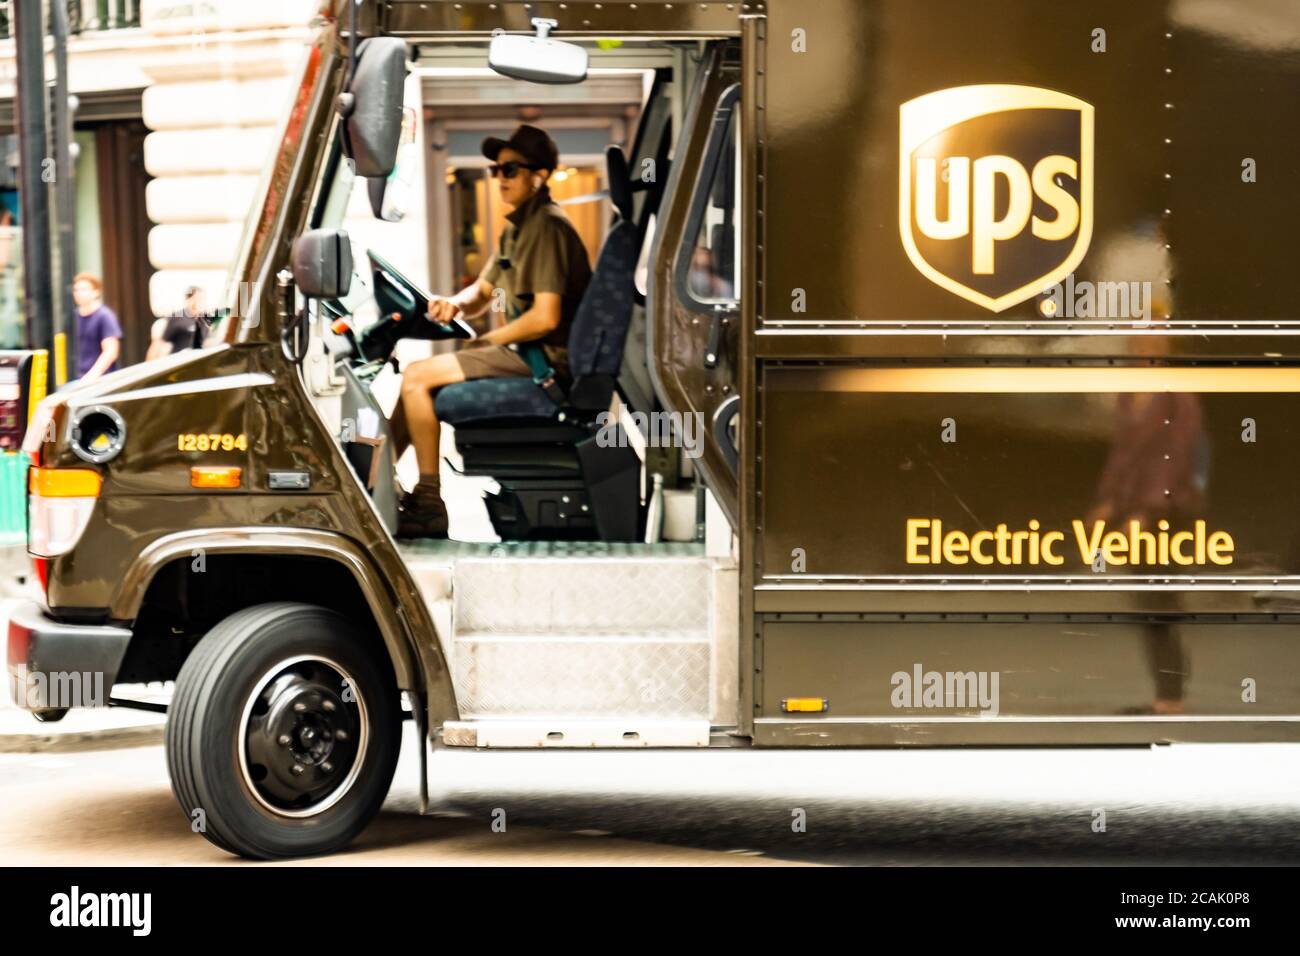 LONDON- UPS oder United Parcel Service Truck, ein amerikanischer multinationaler Paketzustelldienst Stockfoto